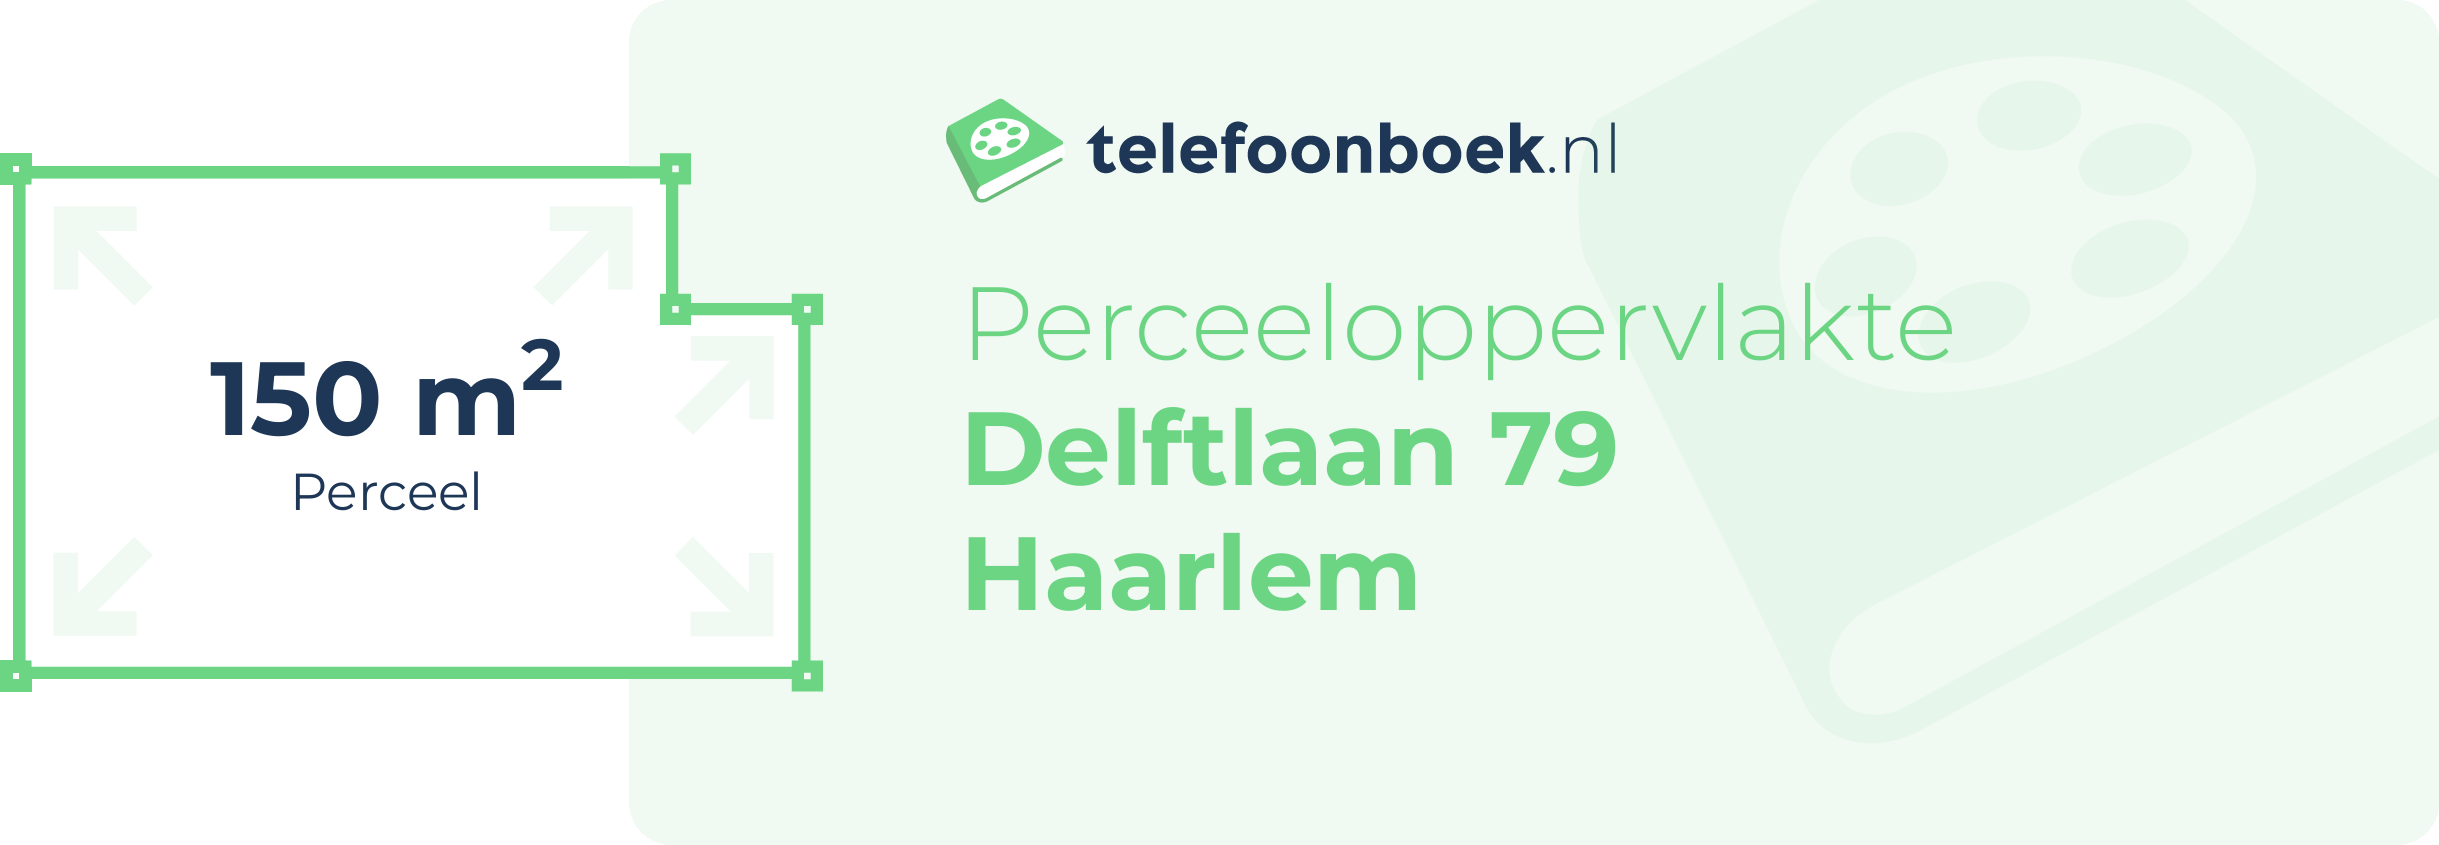 Perceeloppervlakte Delftlaan 79 Haarlem